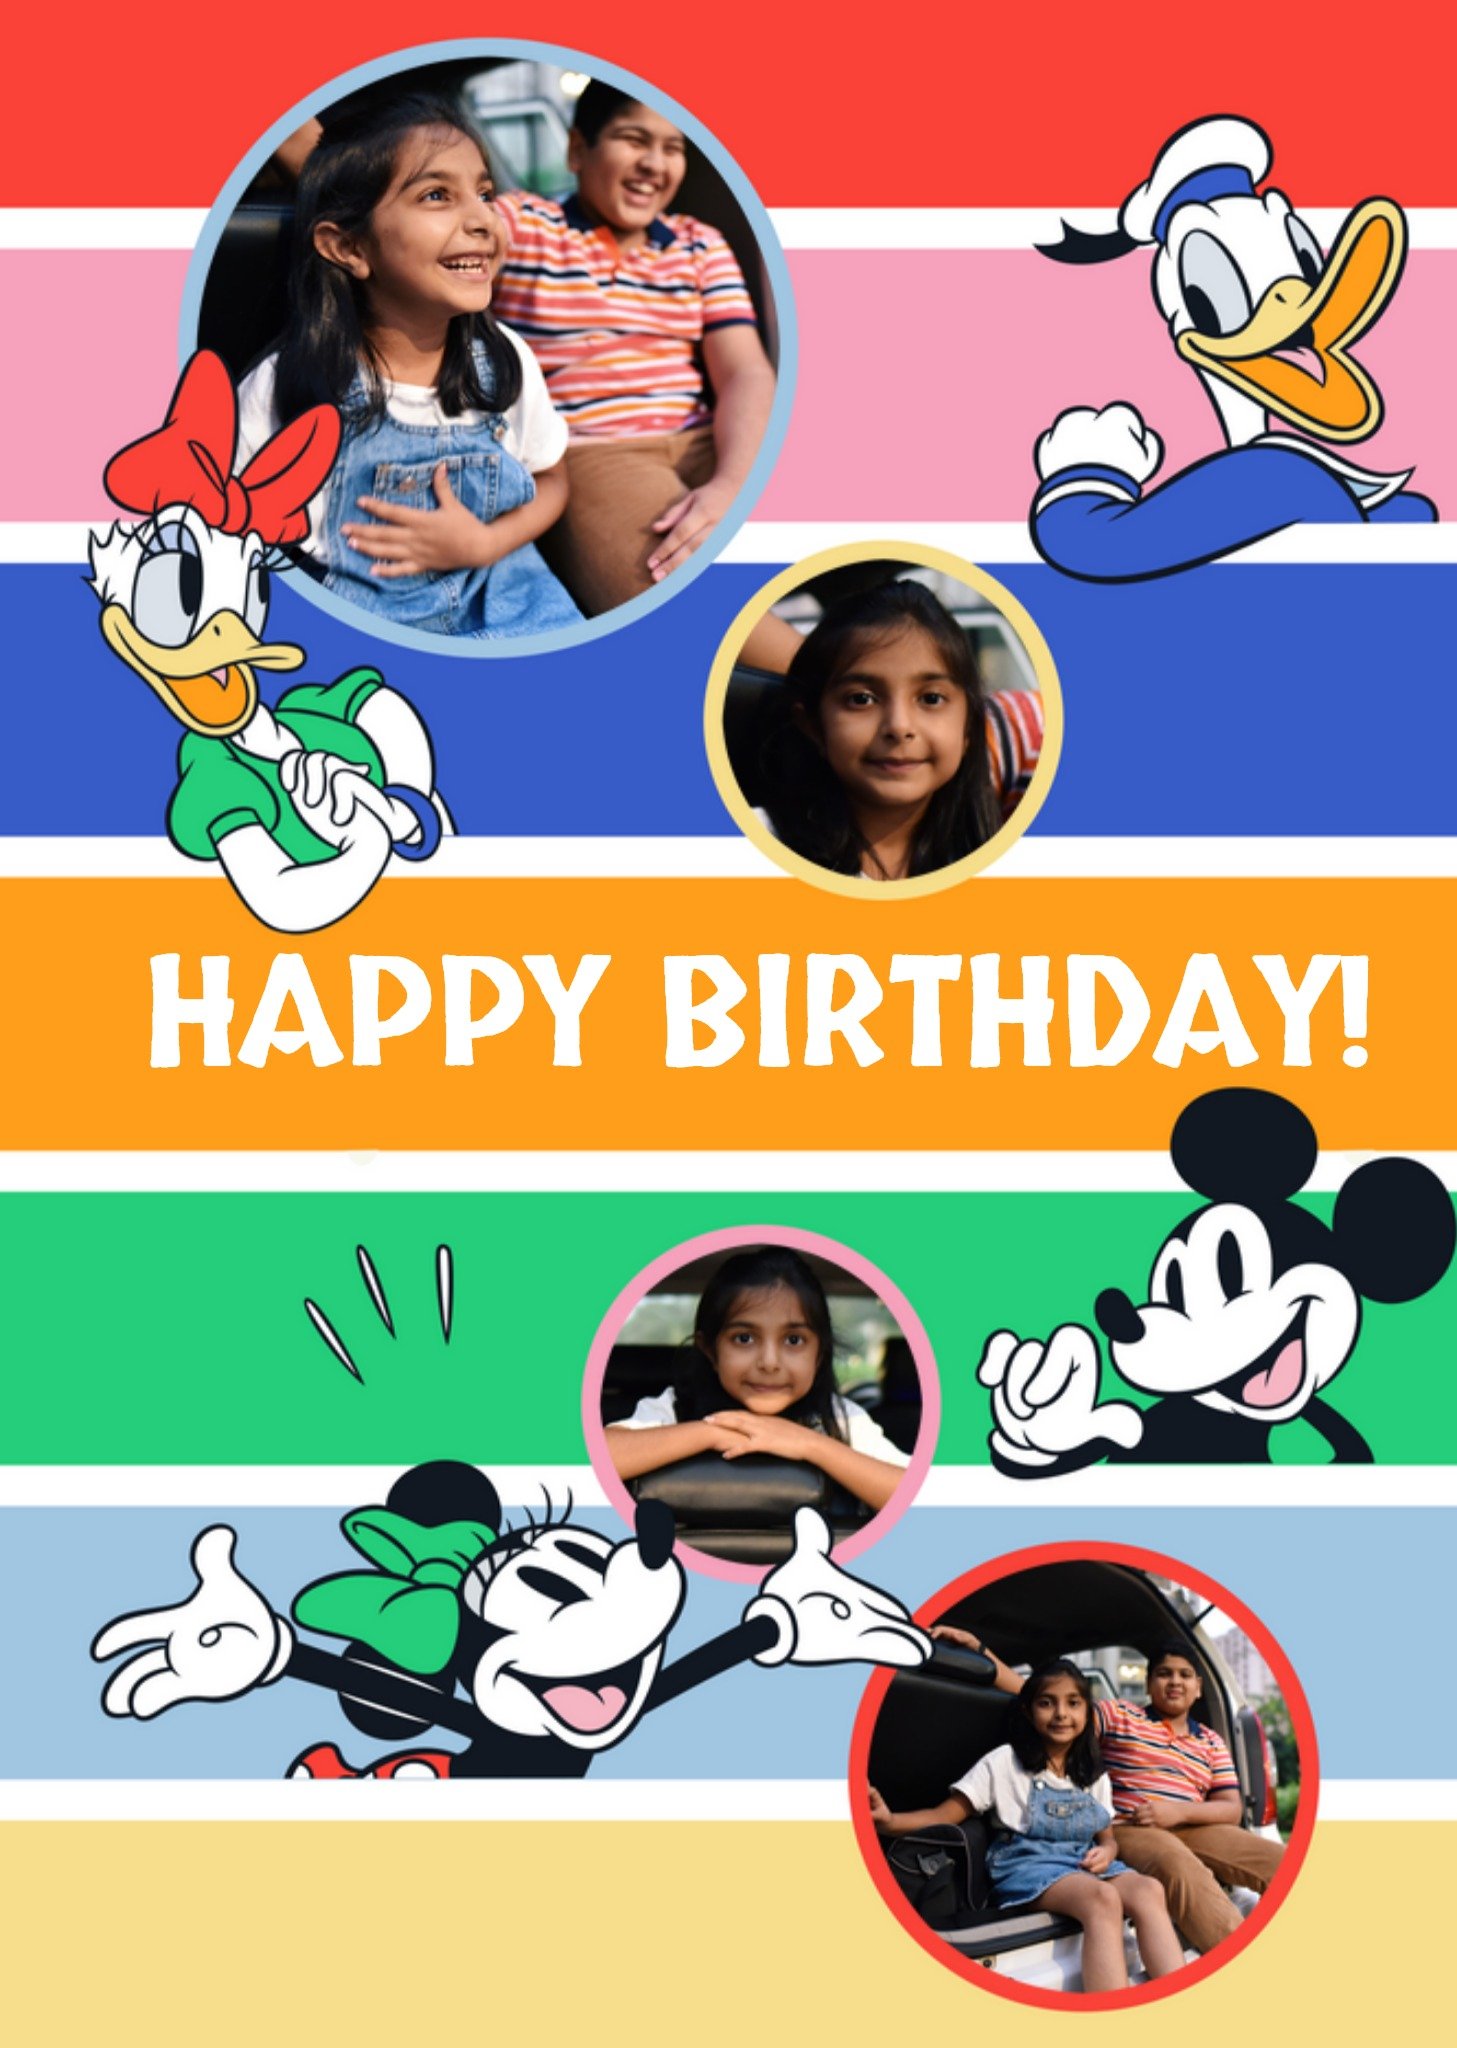 Disney - Verjaardagskaart - Mickey Mouse and friends - Met fotos